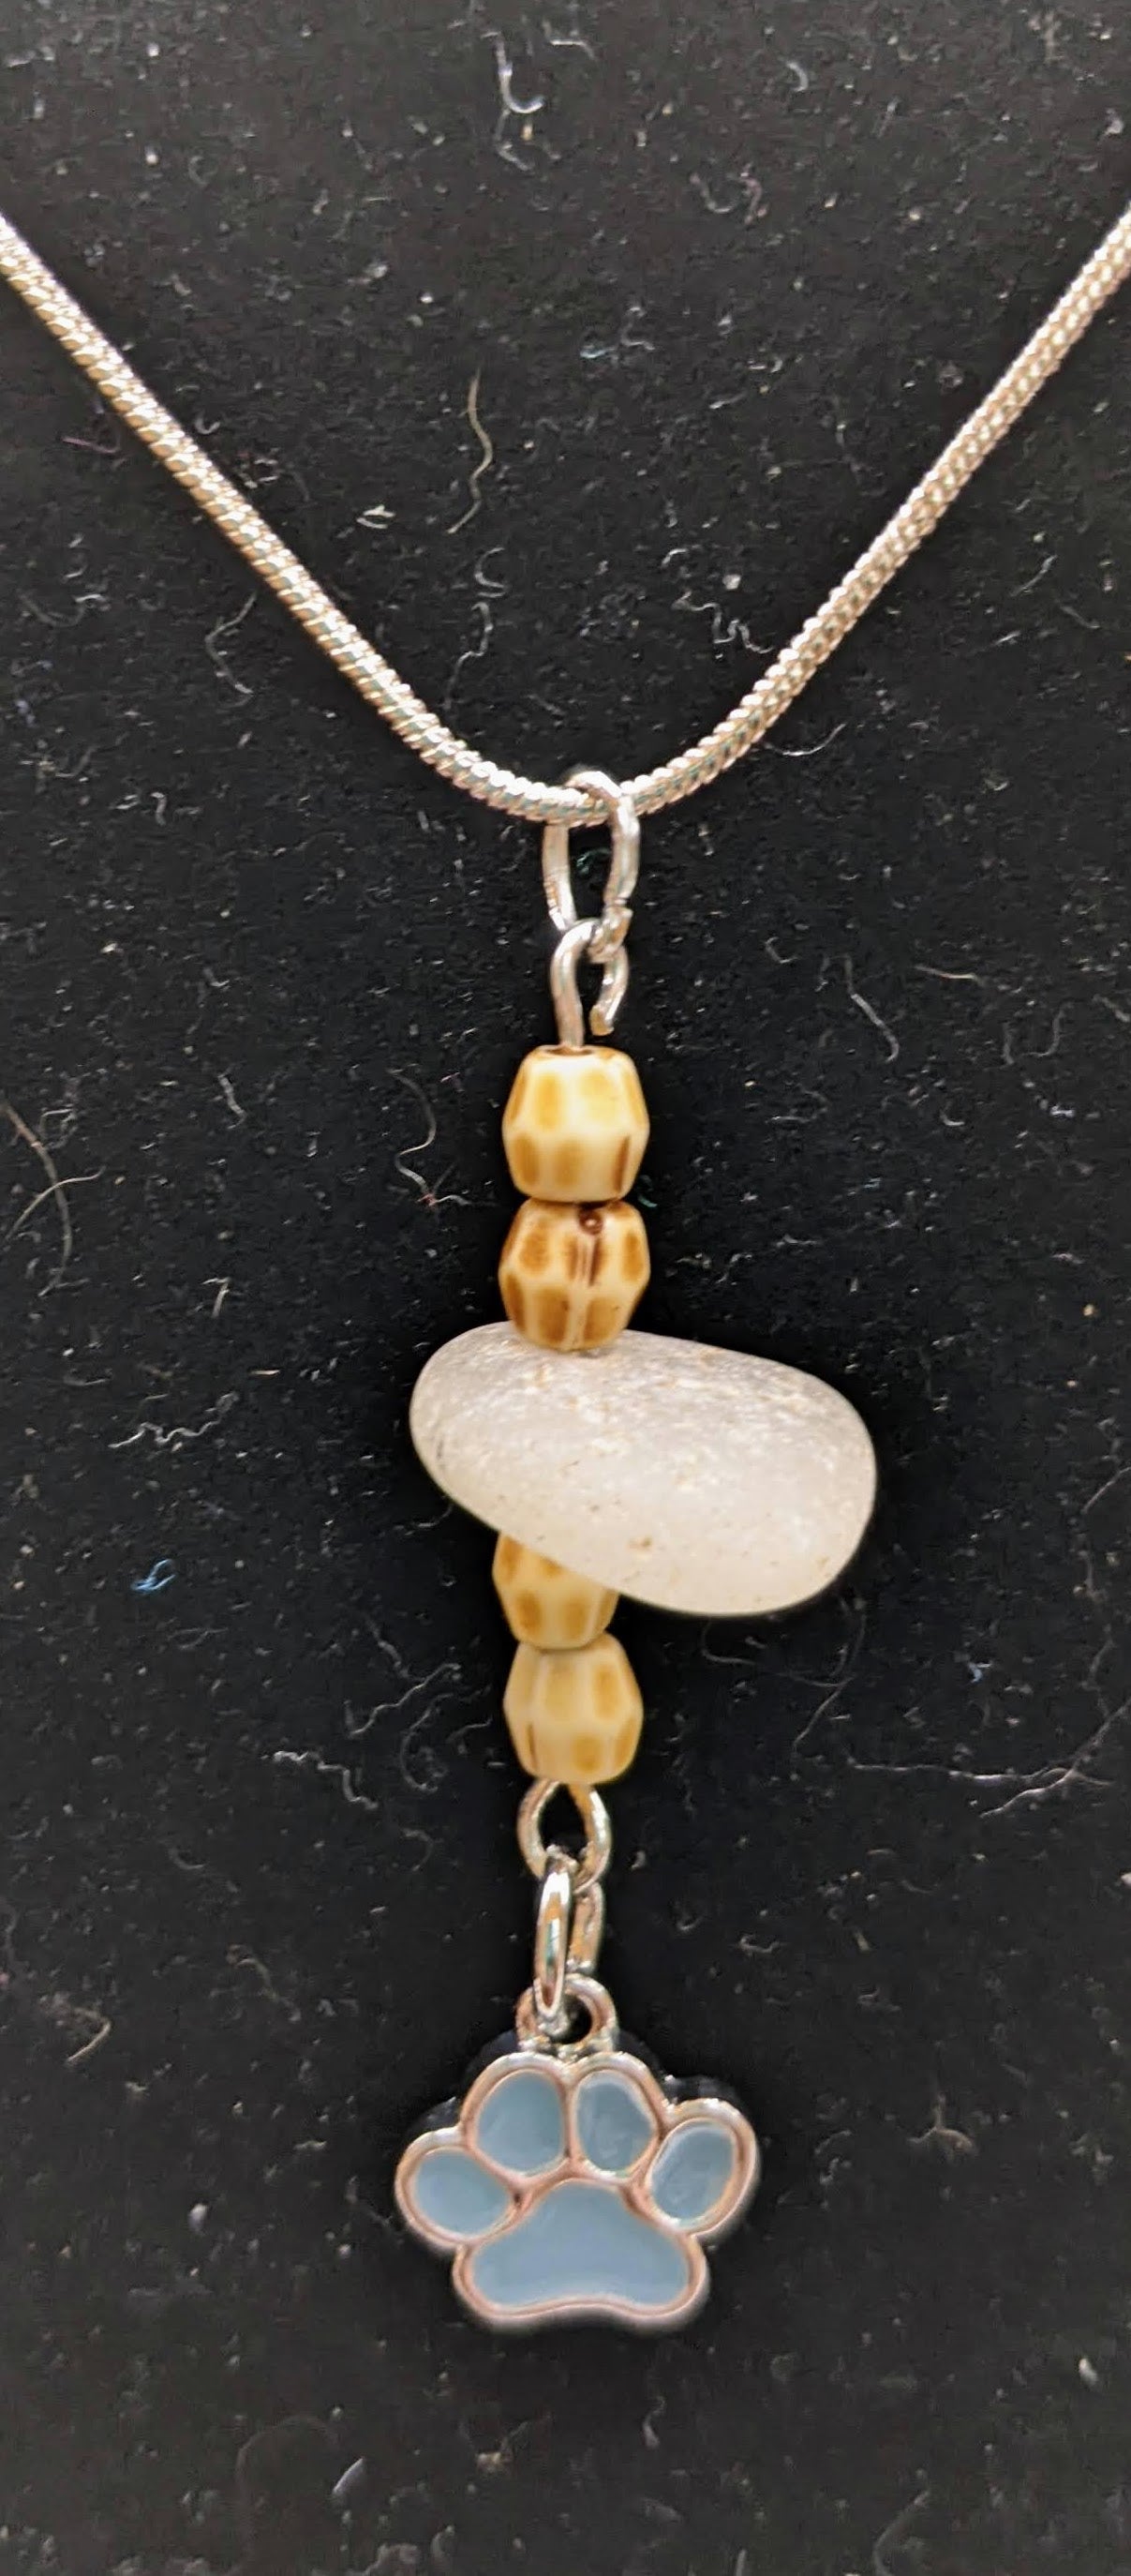 White seaglass and aqua pawprint necklace